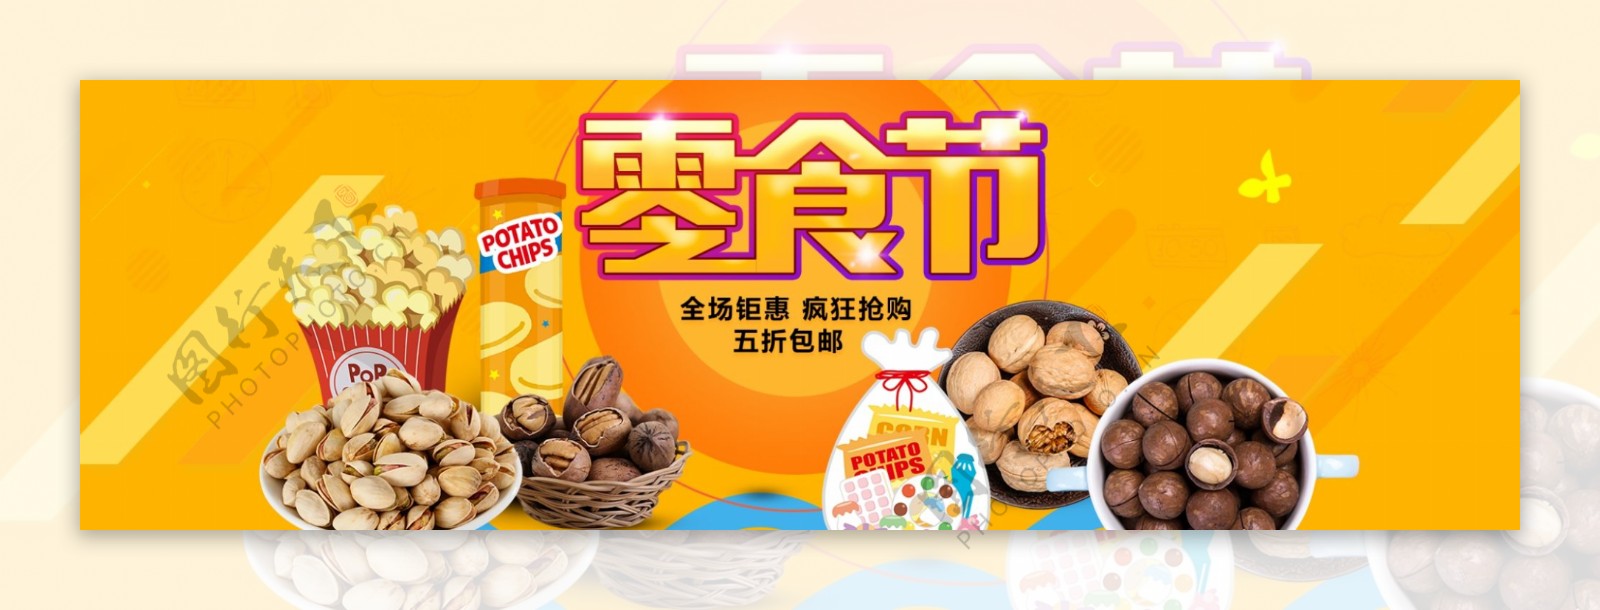 零食节淘宝促销banner设计